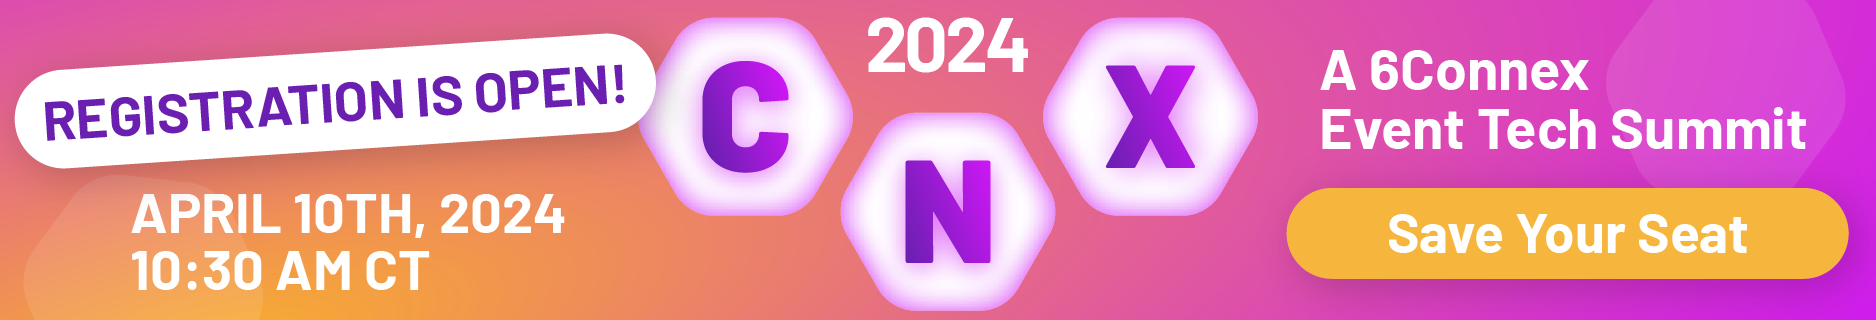 CNX 2024